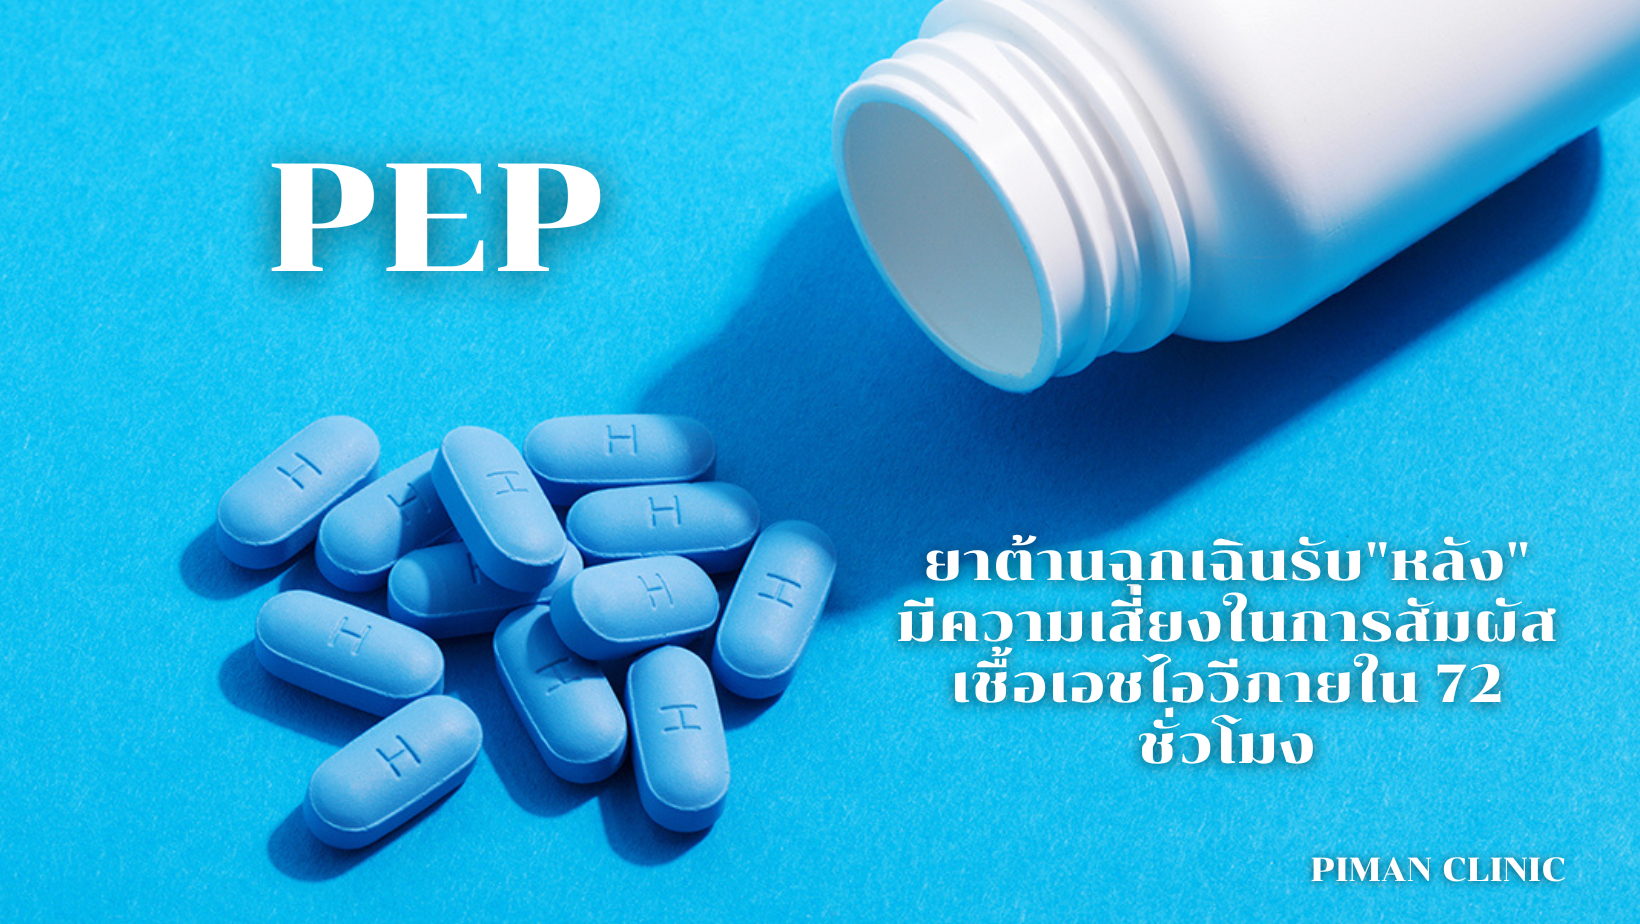 PEP หรือ ยาต้านฉุกเฉิน “หลัง” มีการสัมผัสเชื้อ HIV ภายใน 72 ชั่วโมง